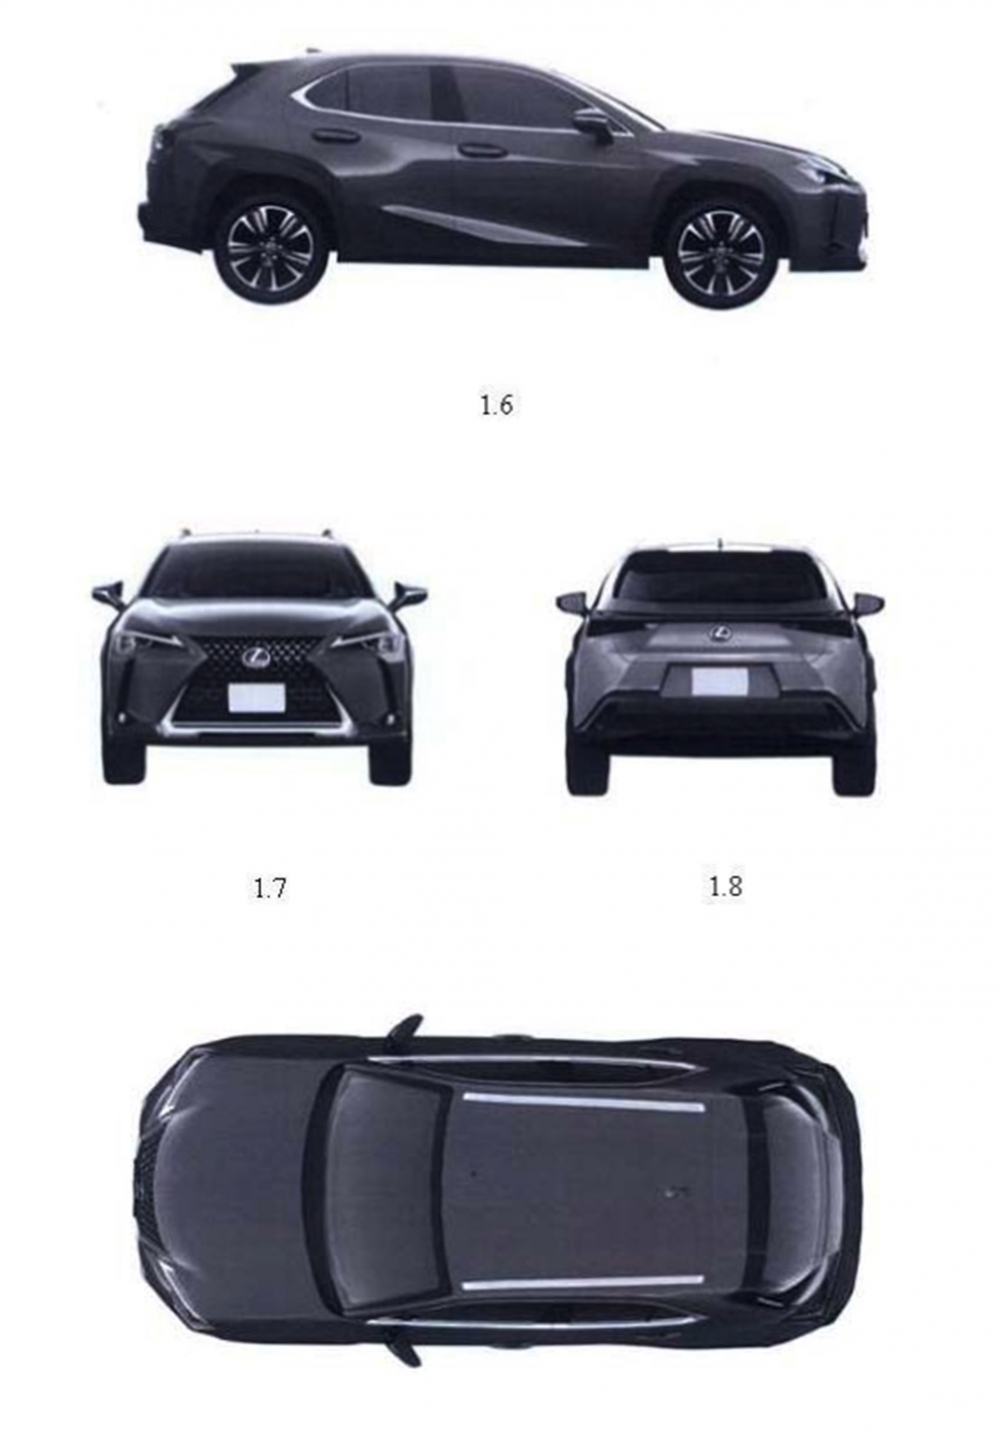 Hình ảnh mô tả mẫu Lexus UX theo dữ liệu của cục Sở hữu trí tuệ